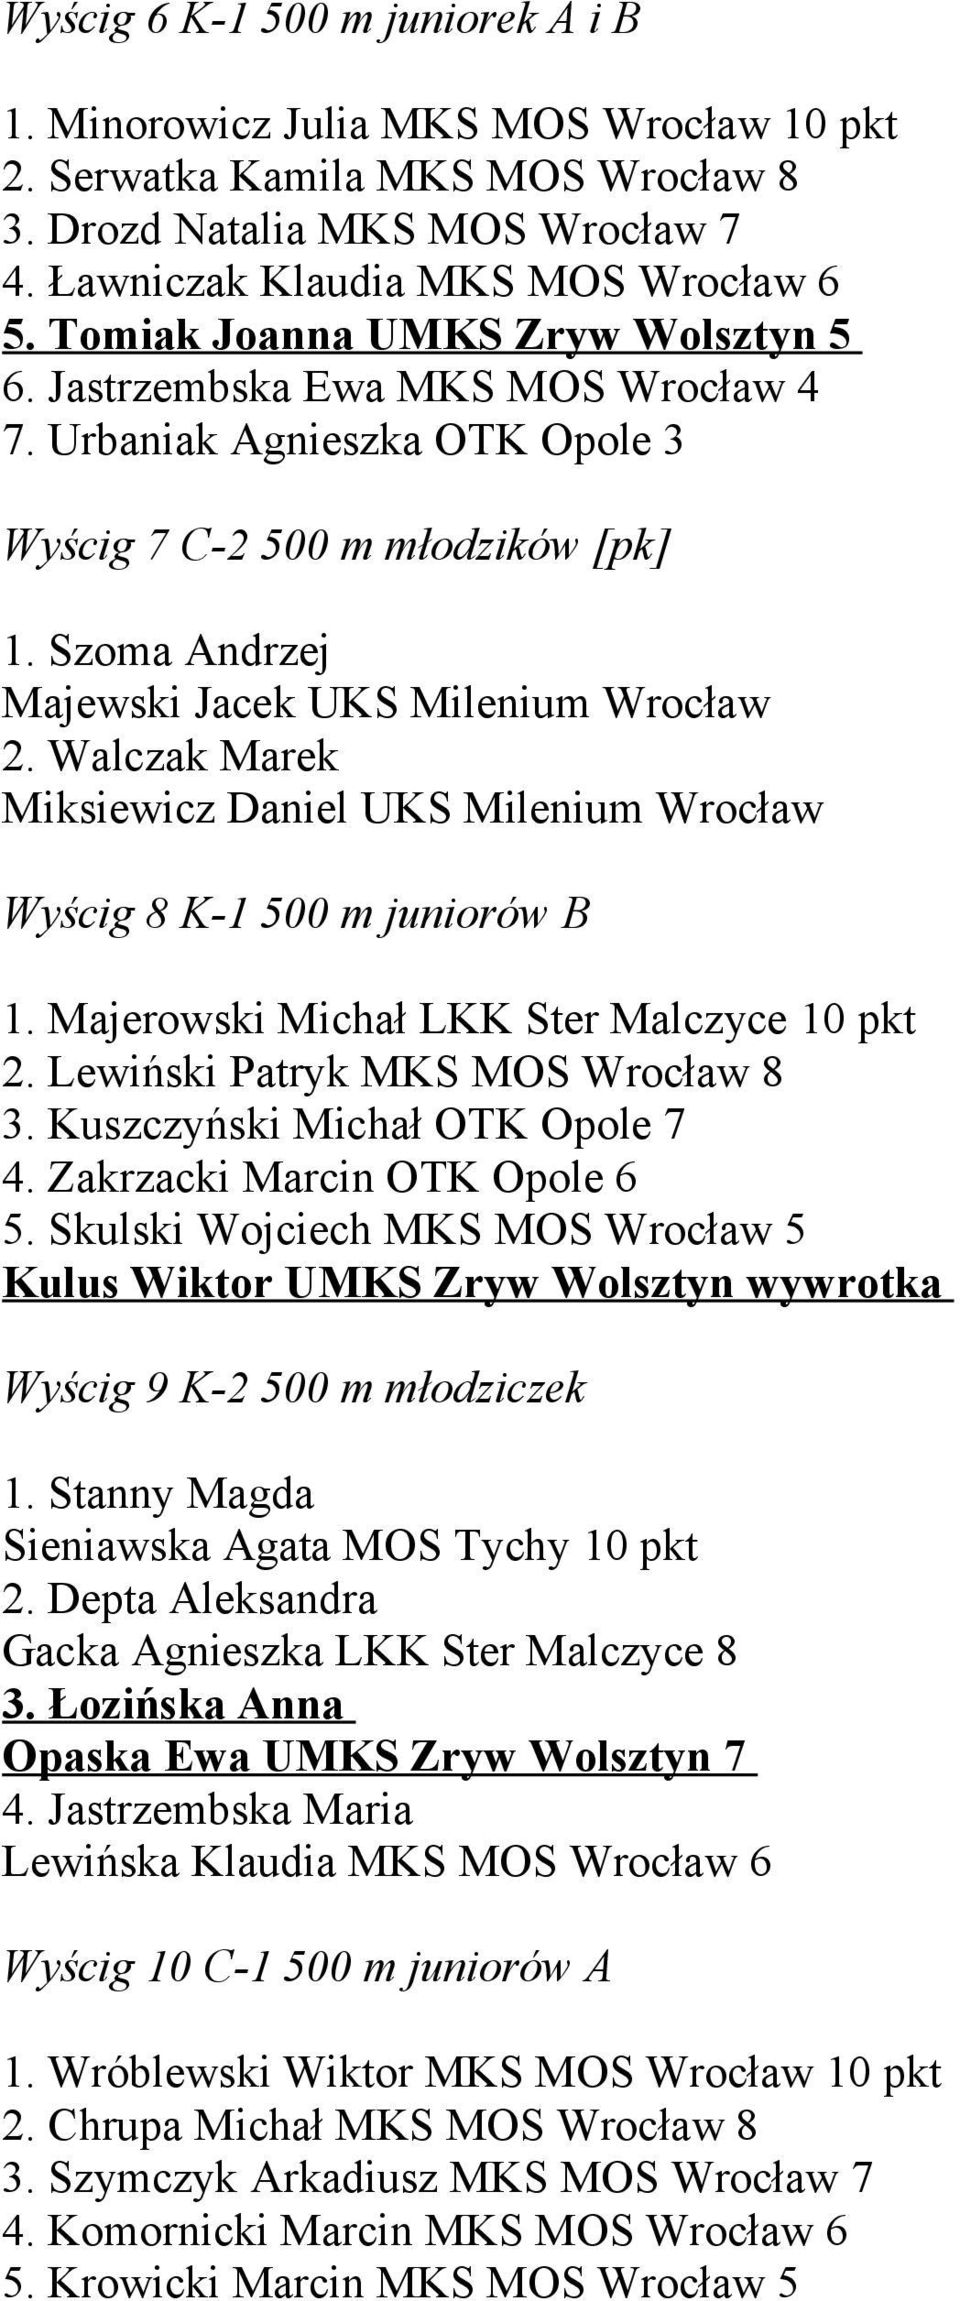 Walczak Marek Miksiewicz Daniel UKS Milenium Wrocław Wyścig 8 K-1 500 m juniorów B 1. Majerowski Michał LKK Ster Malczyce 10 pkt 2. Lewiński Patryk MKS MOS Wrocław 8 3.